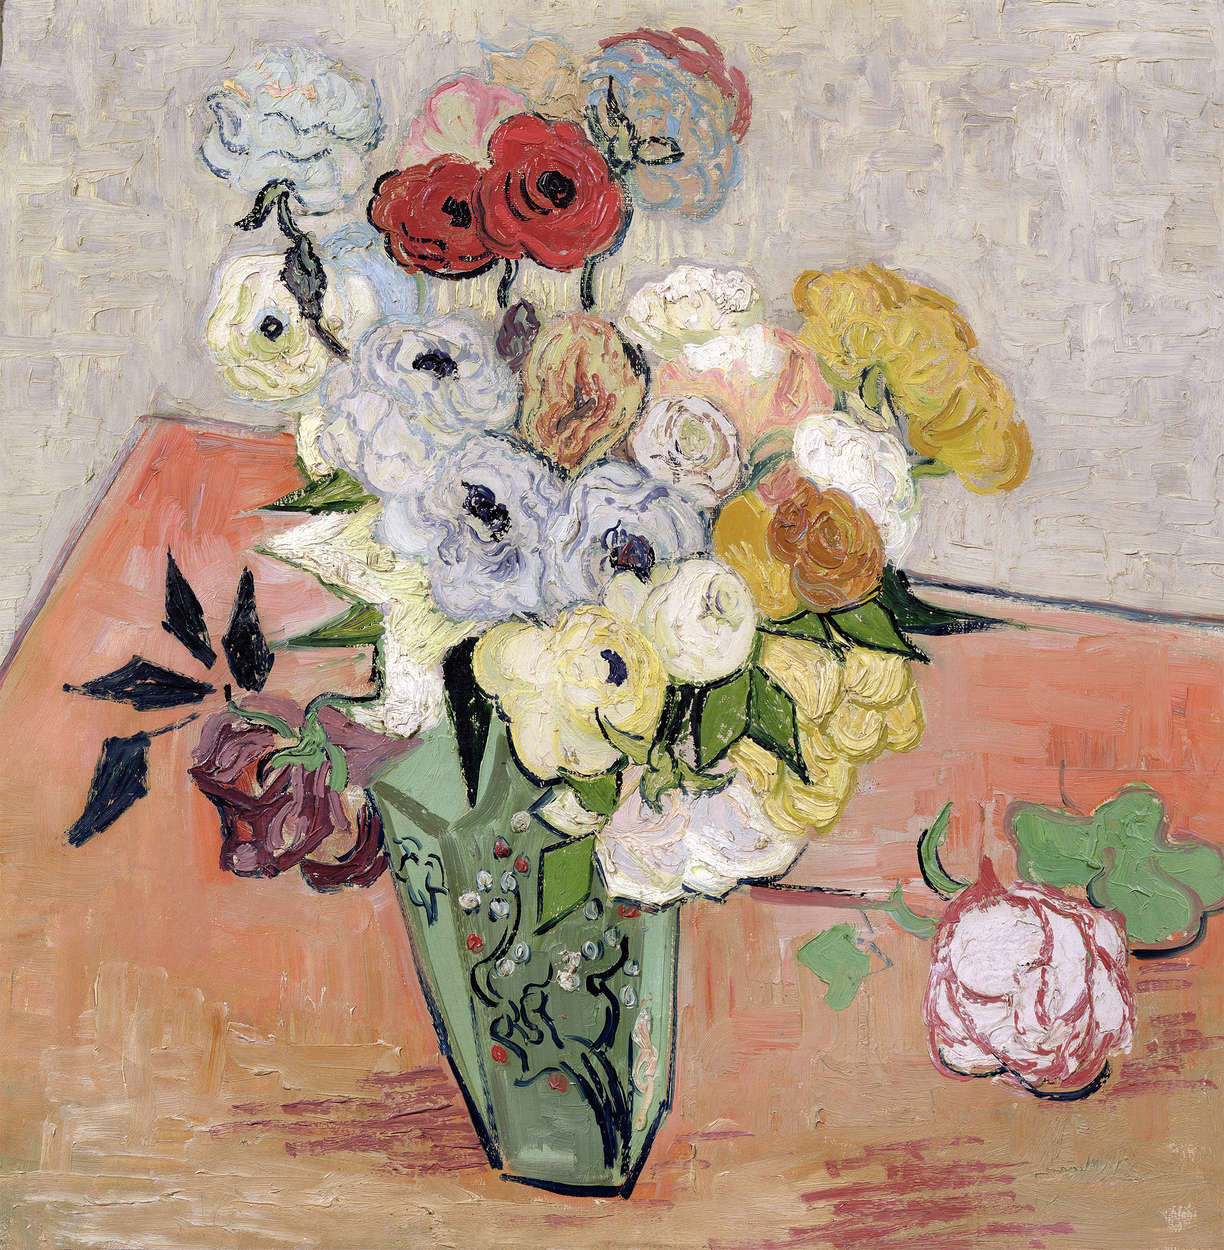             Stilleven met Japanse vaas rozen en anemonen" muurschildering van Vincent van Gogh
        